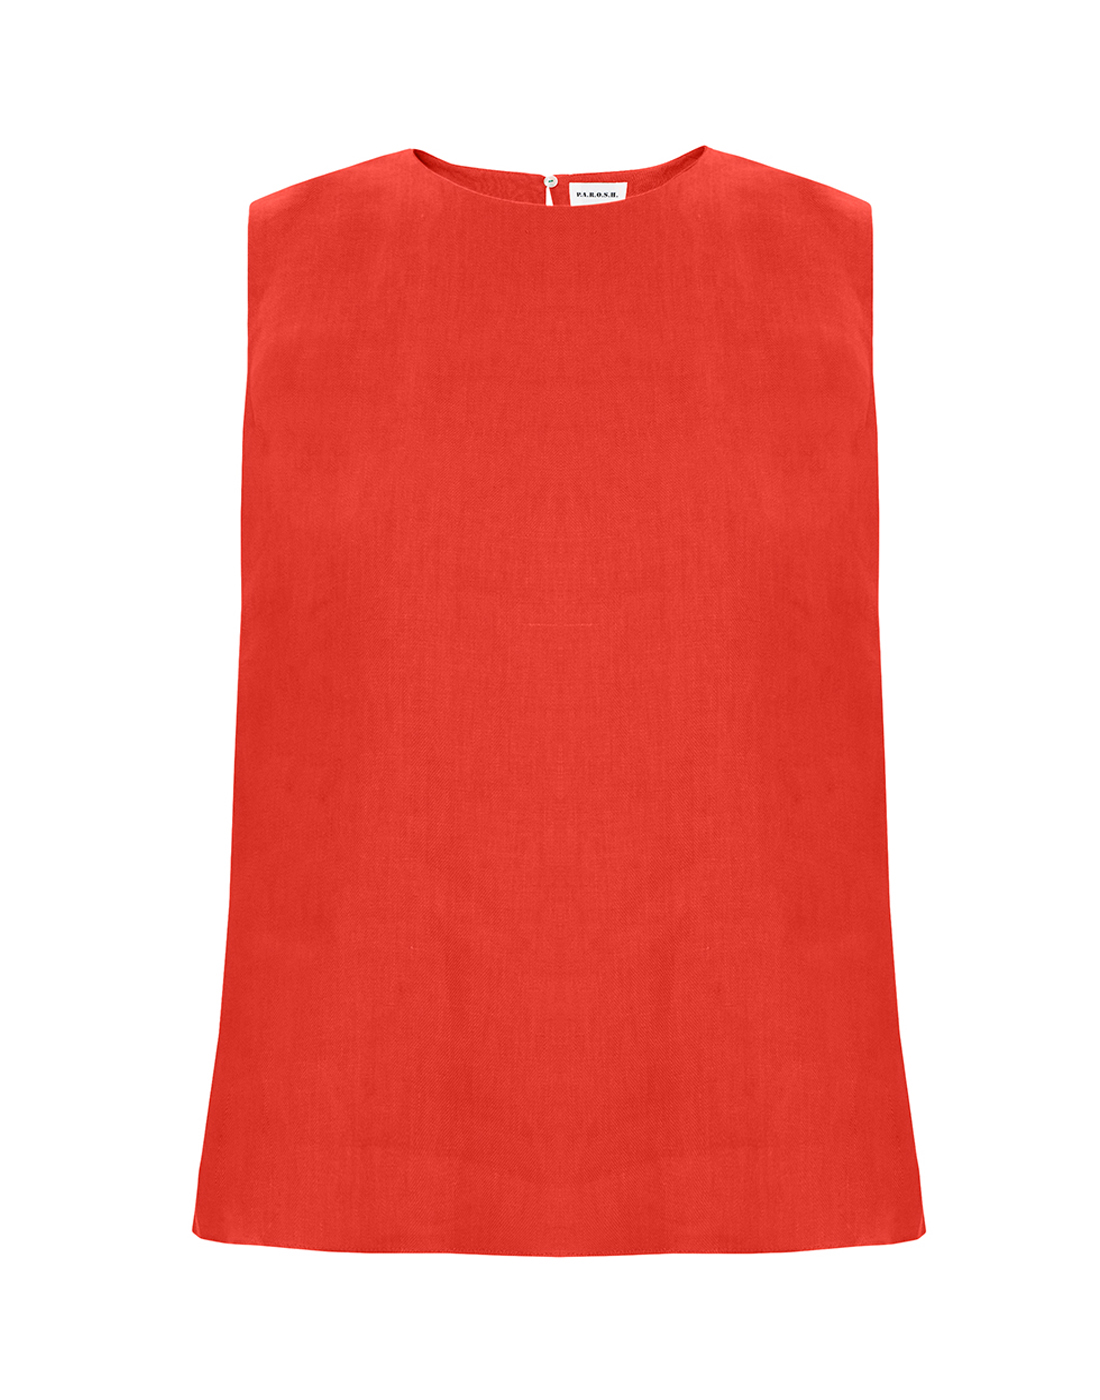 Блуза красная женская P.A.R.O.S.H. SPANTY24/D312429/009-1